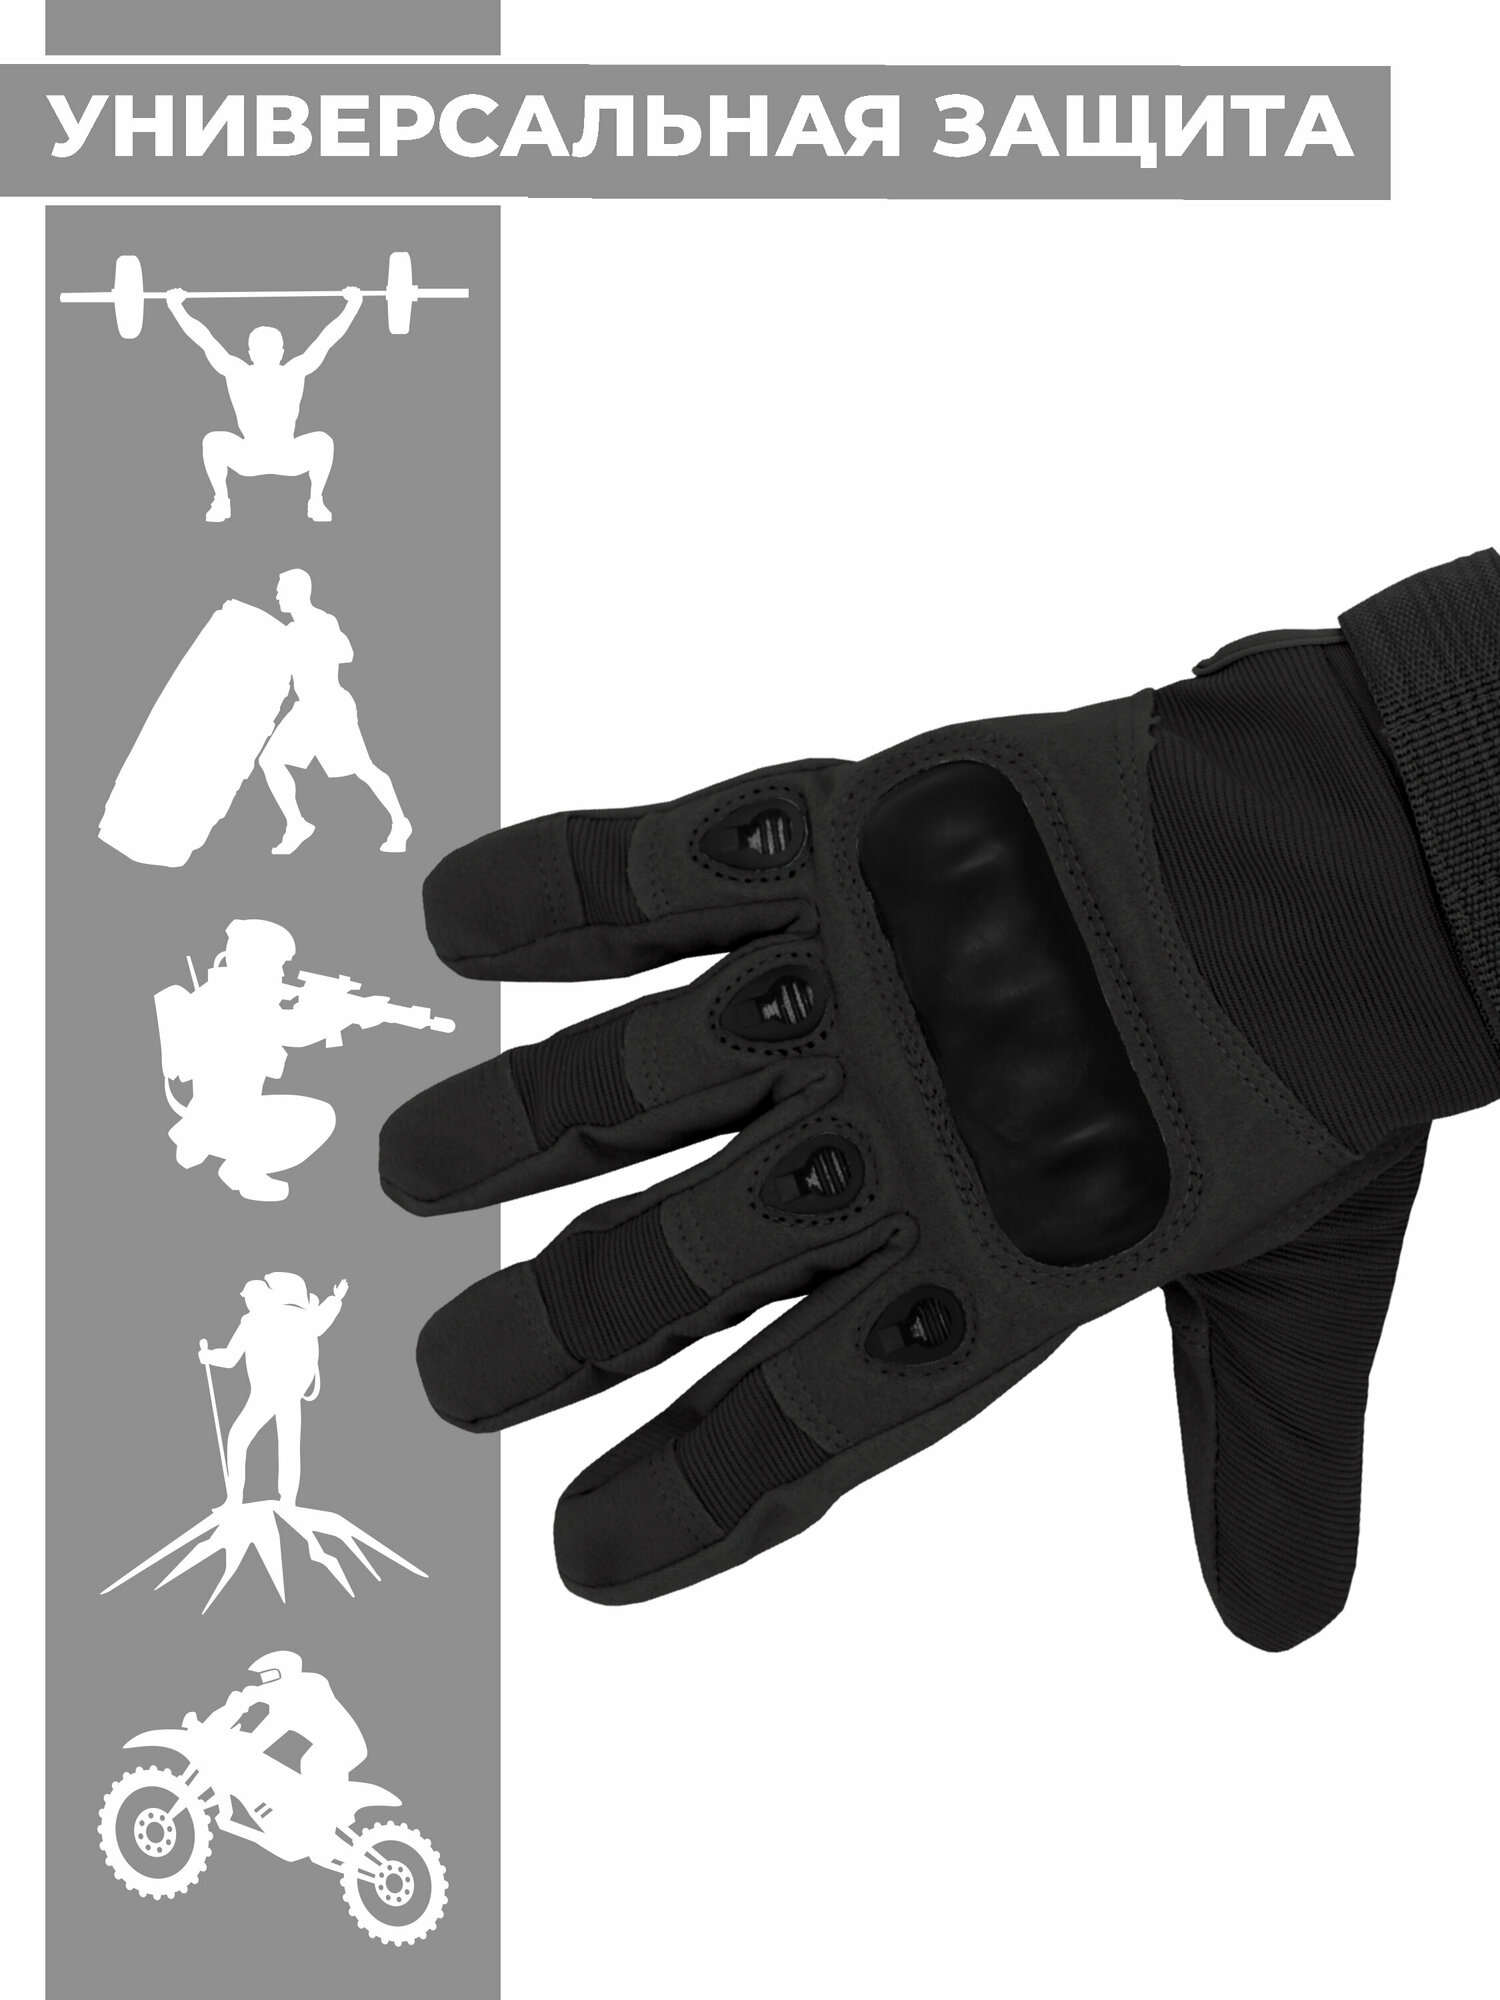 Защитные тактические перчатки Boomshakalaka, цвет черный, размер M, обхват ладони 190-210 мм